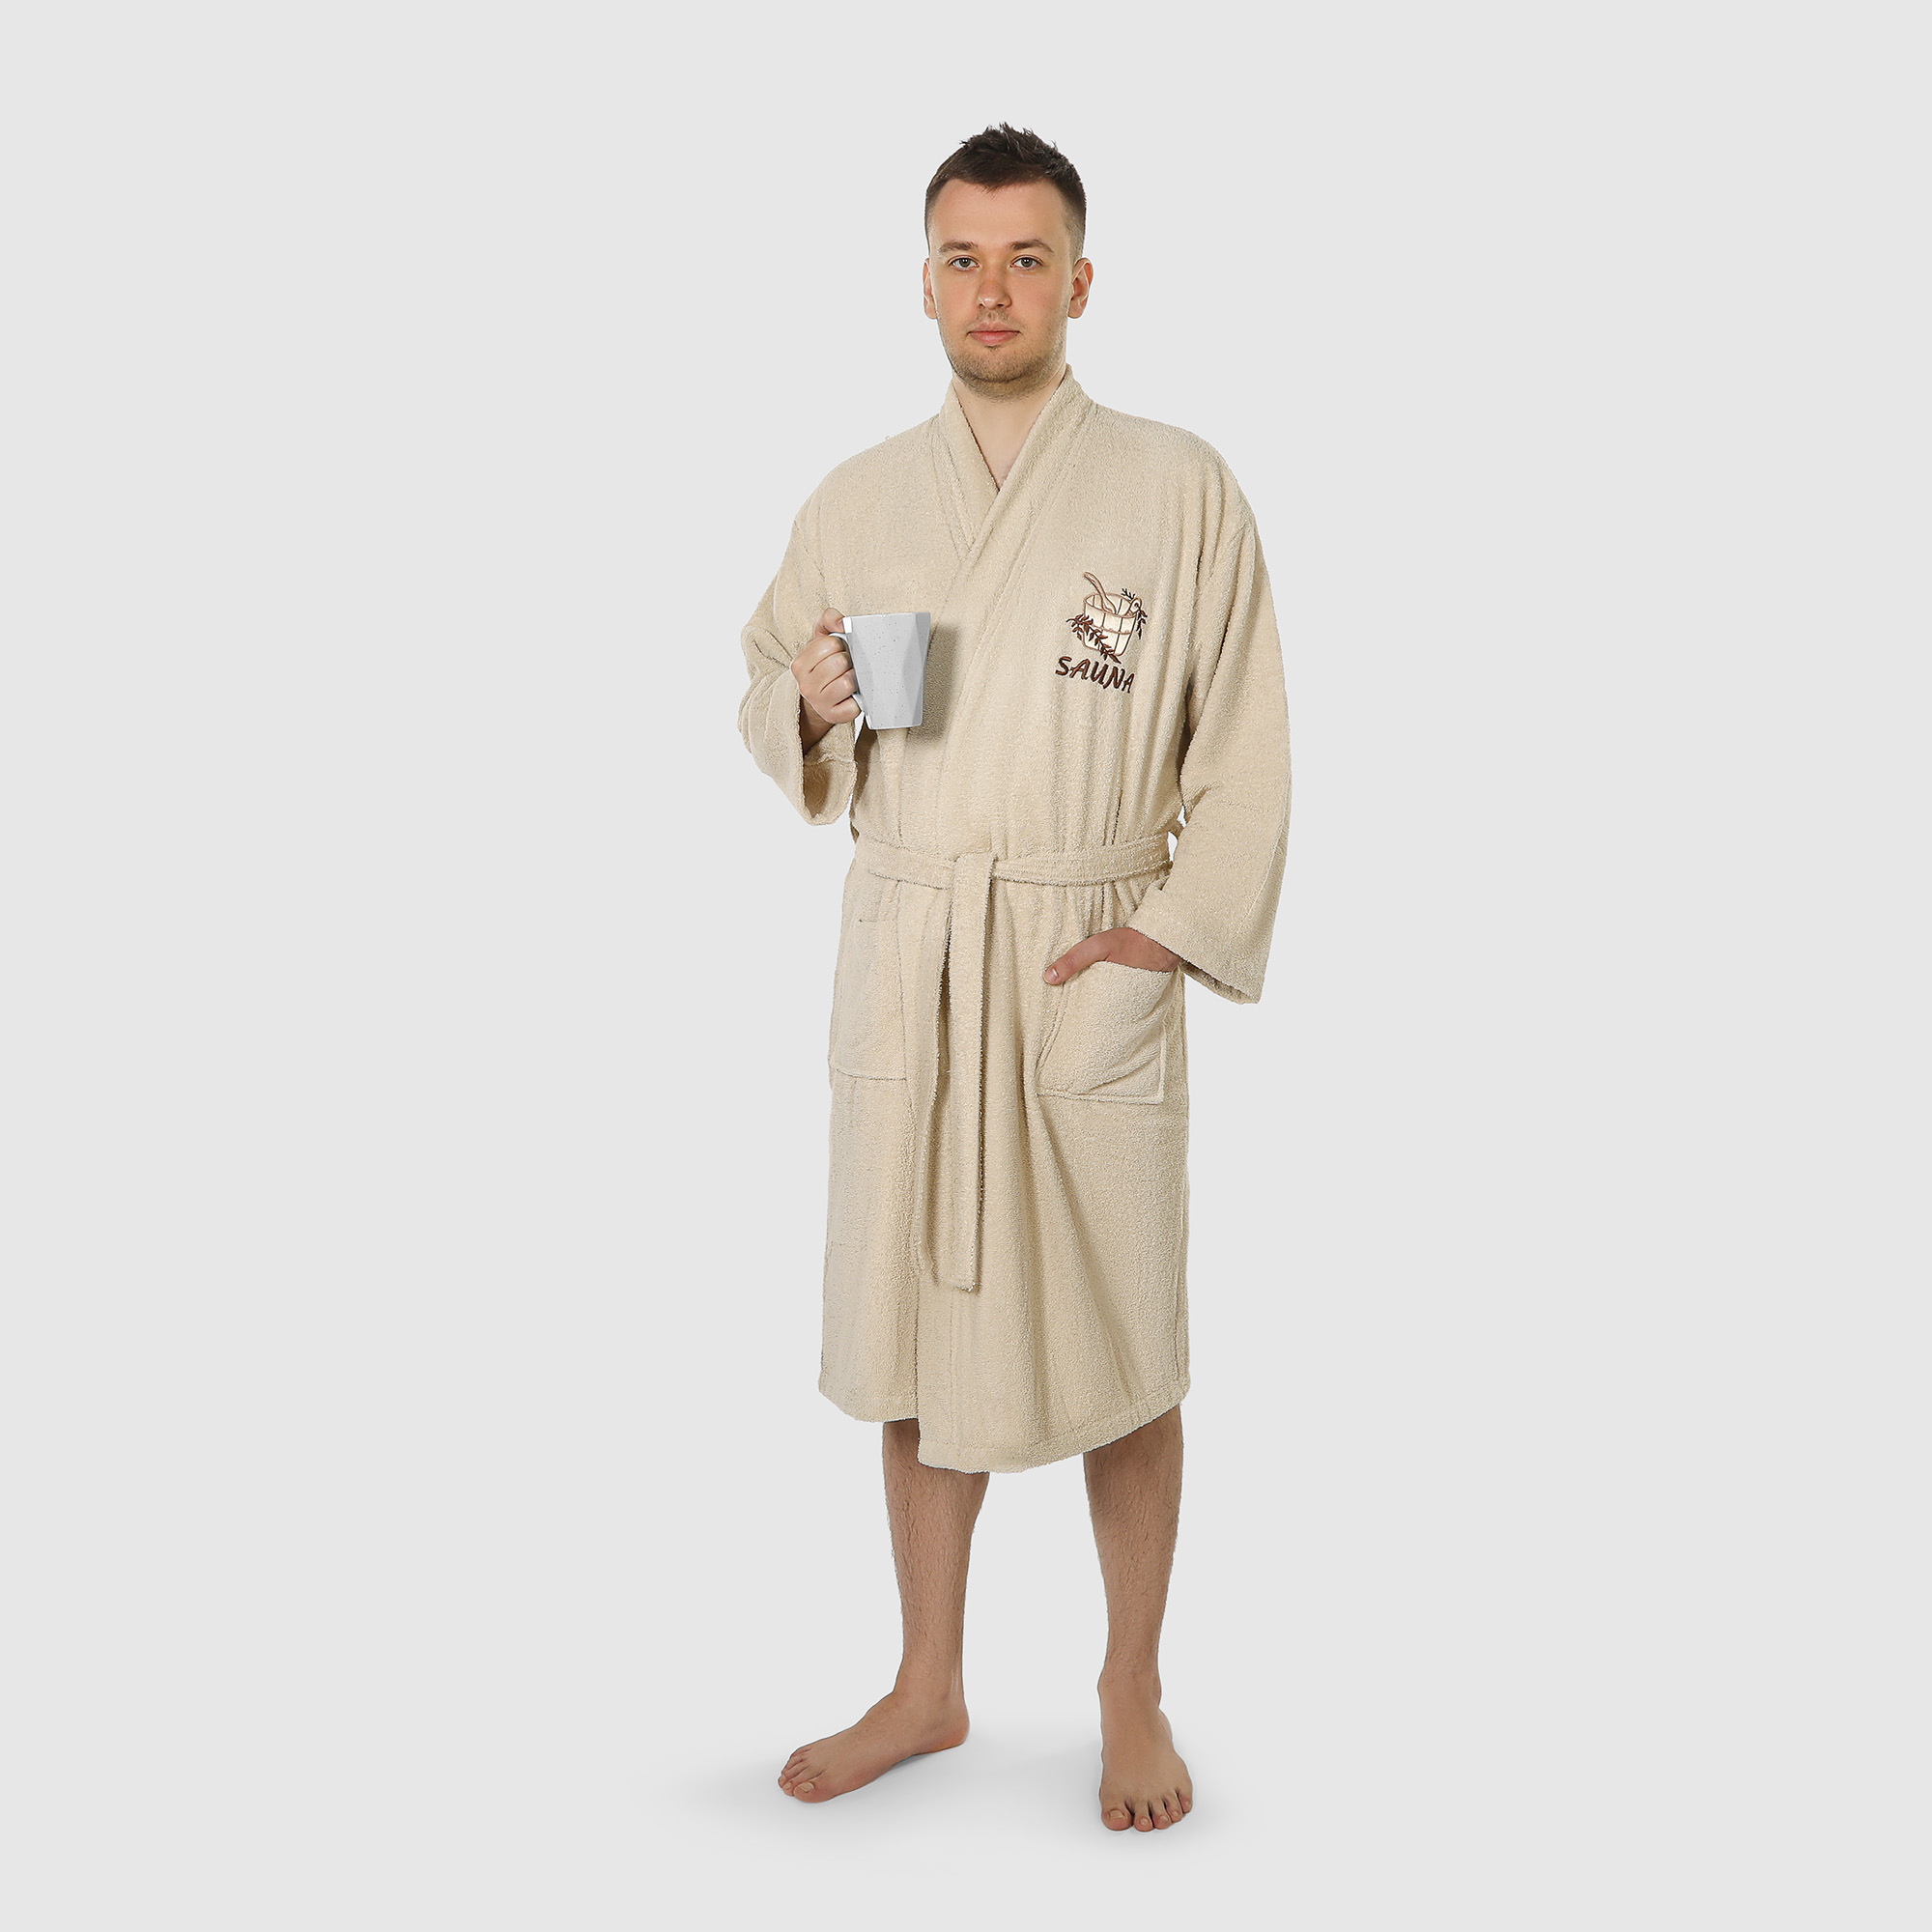 Халат мужской махровый Asil Sauna Kimono brown XL халат махровый asil sauna с капюшоном xxxl 83025031